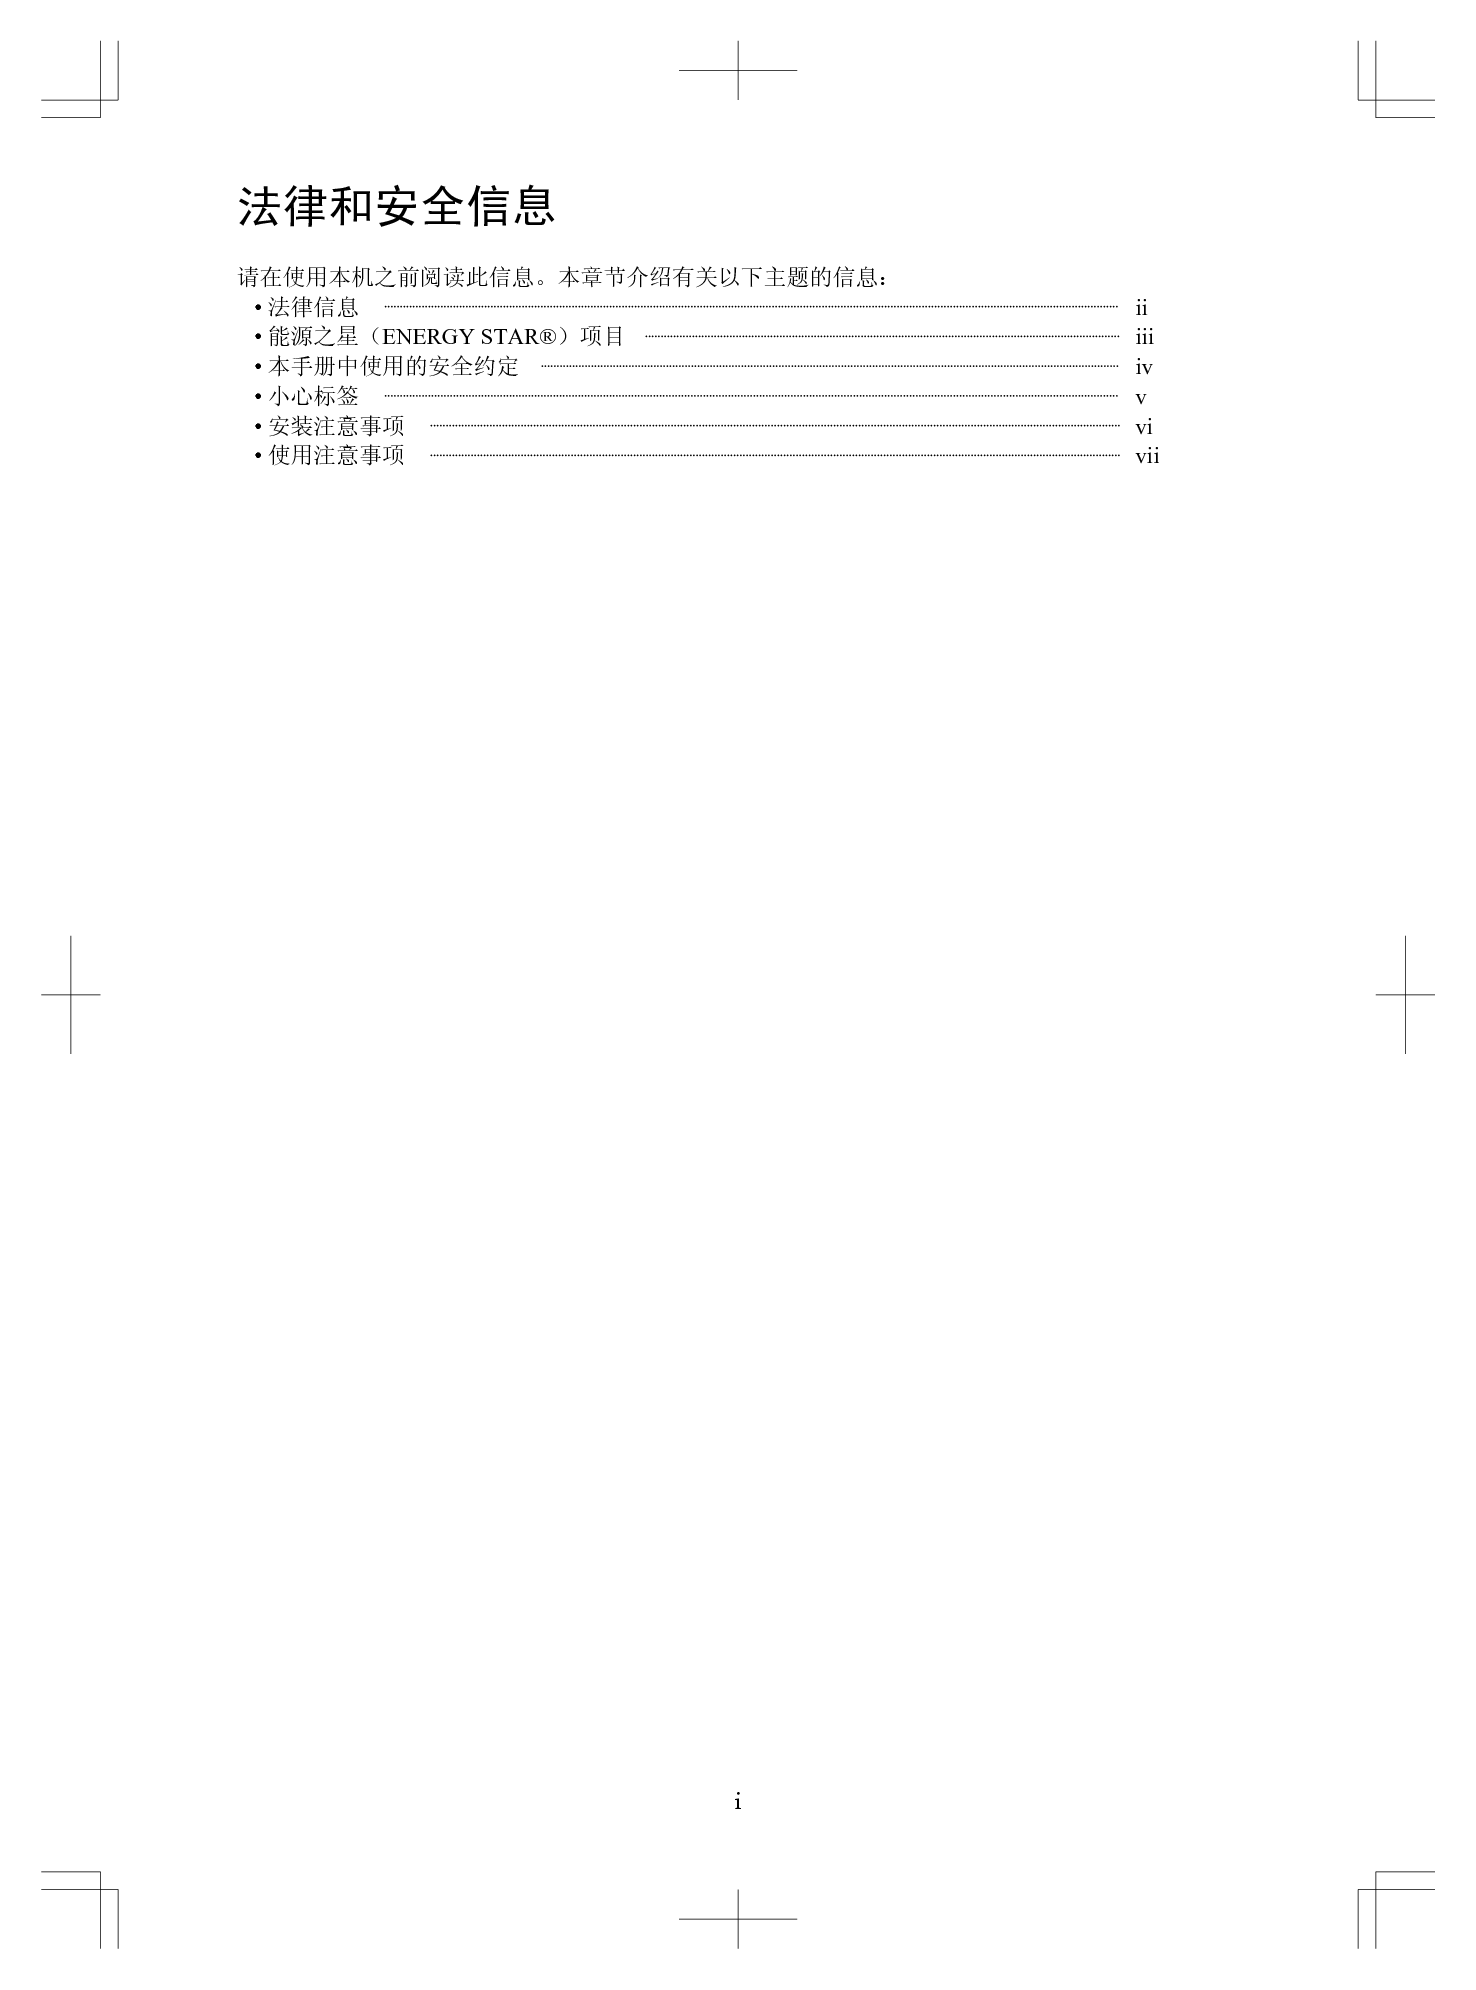 京瓷 Kyocera KM-4800w 快速参考指南 第2页